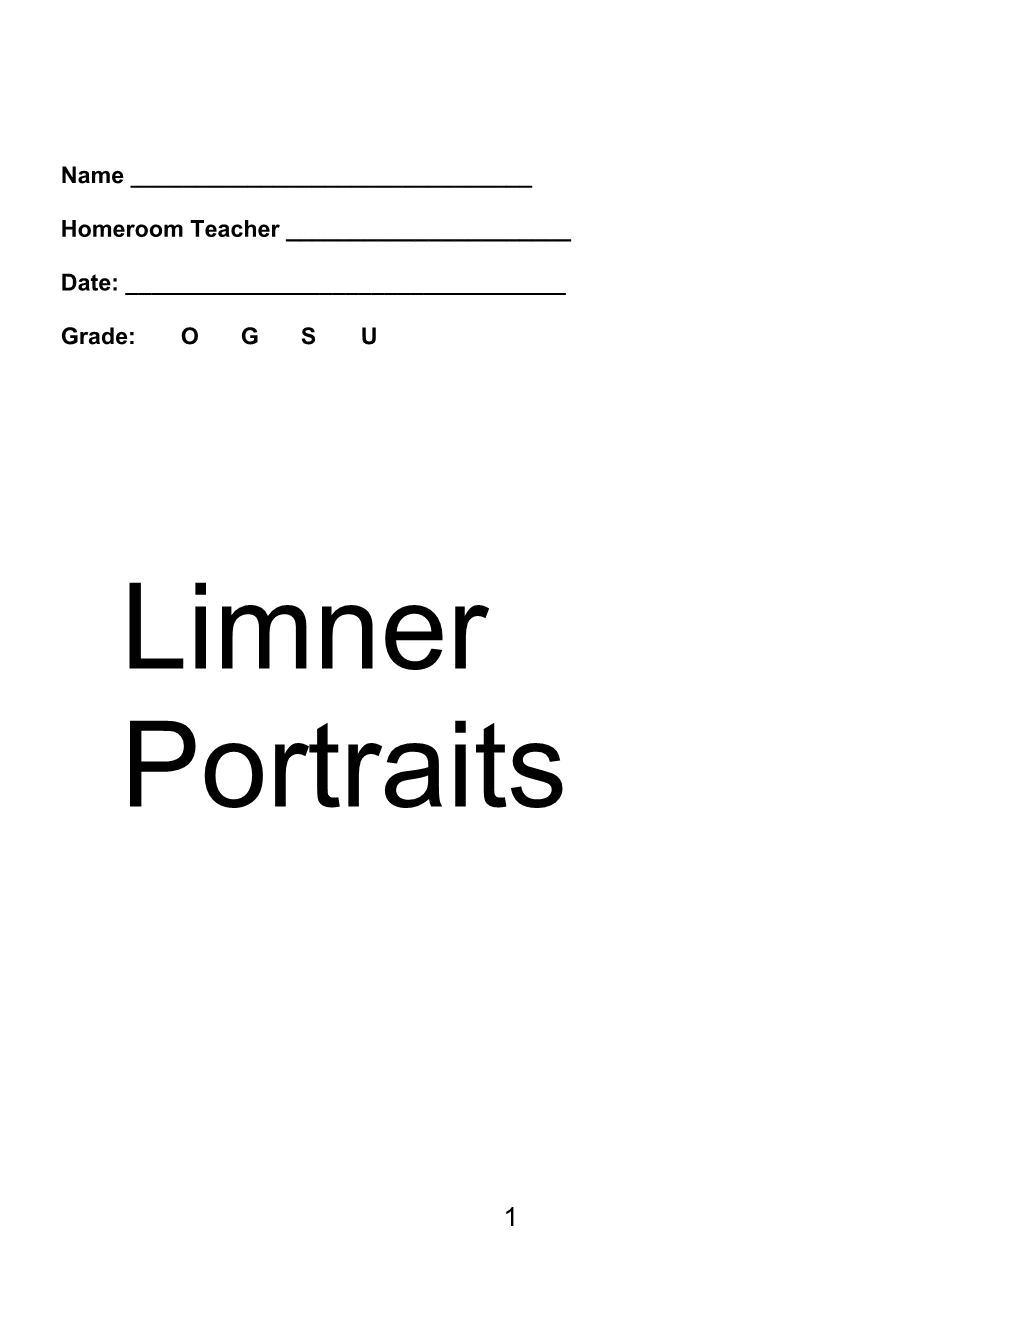 Limner Portrait Packet